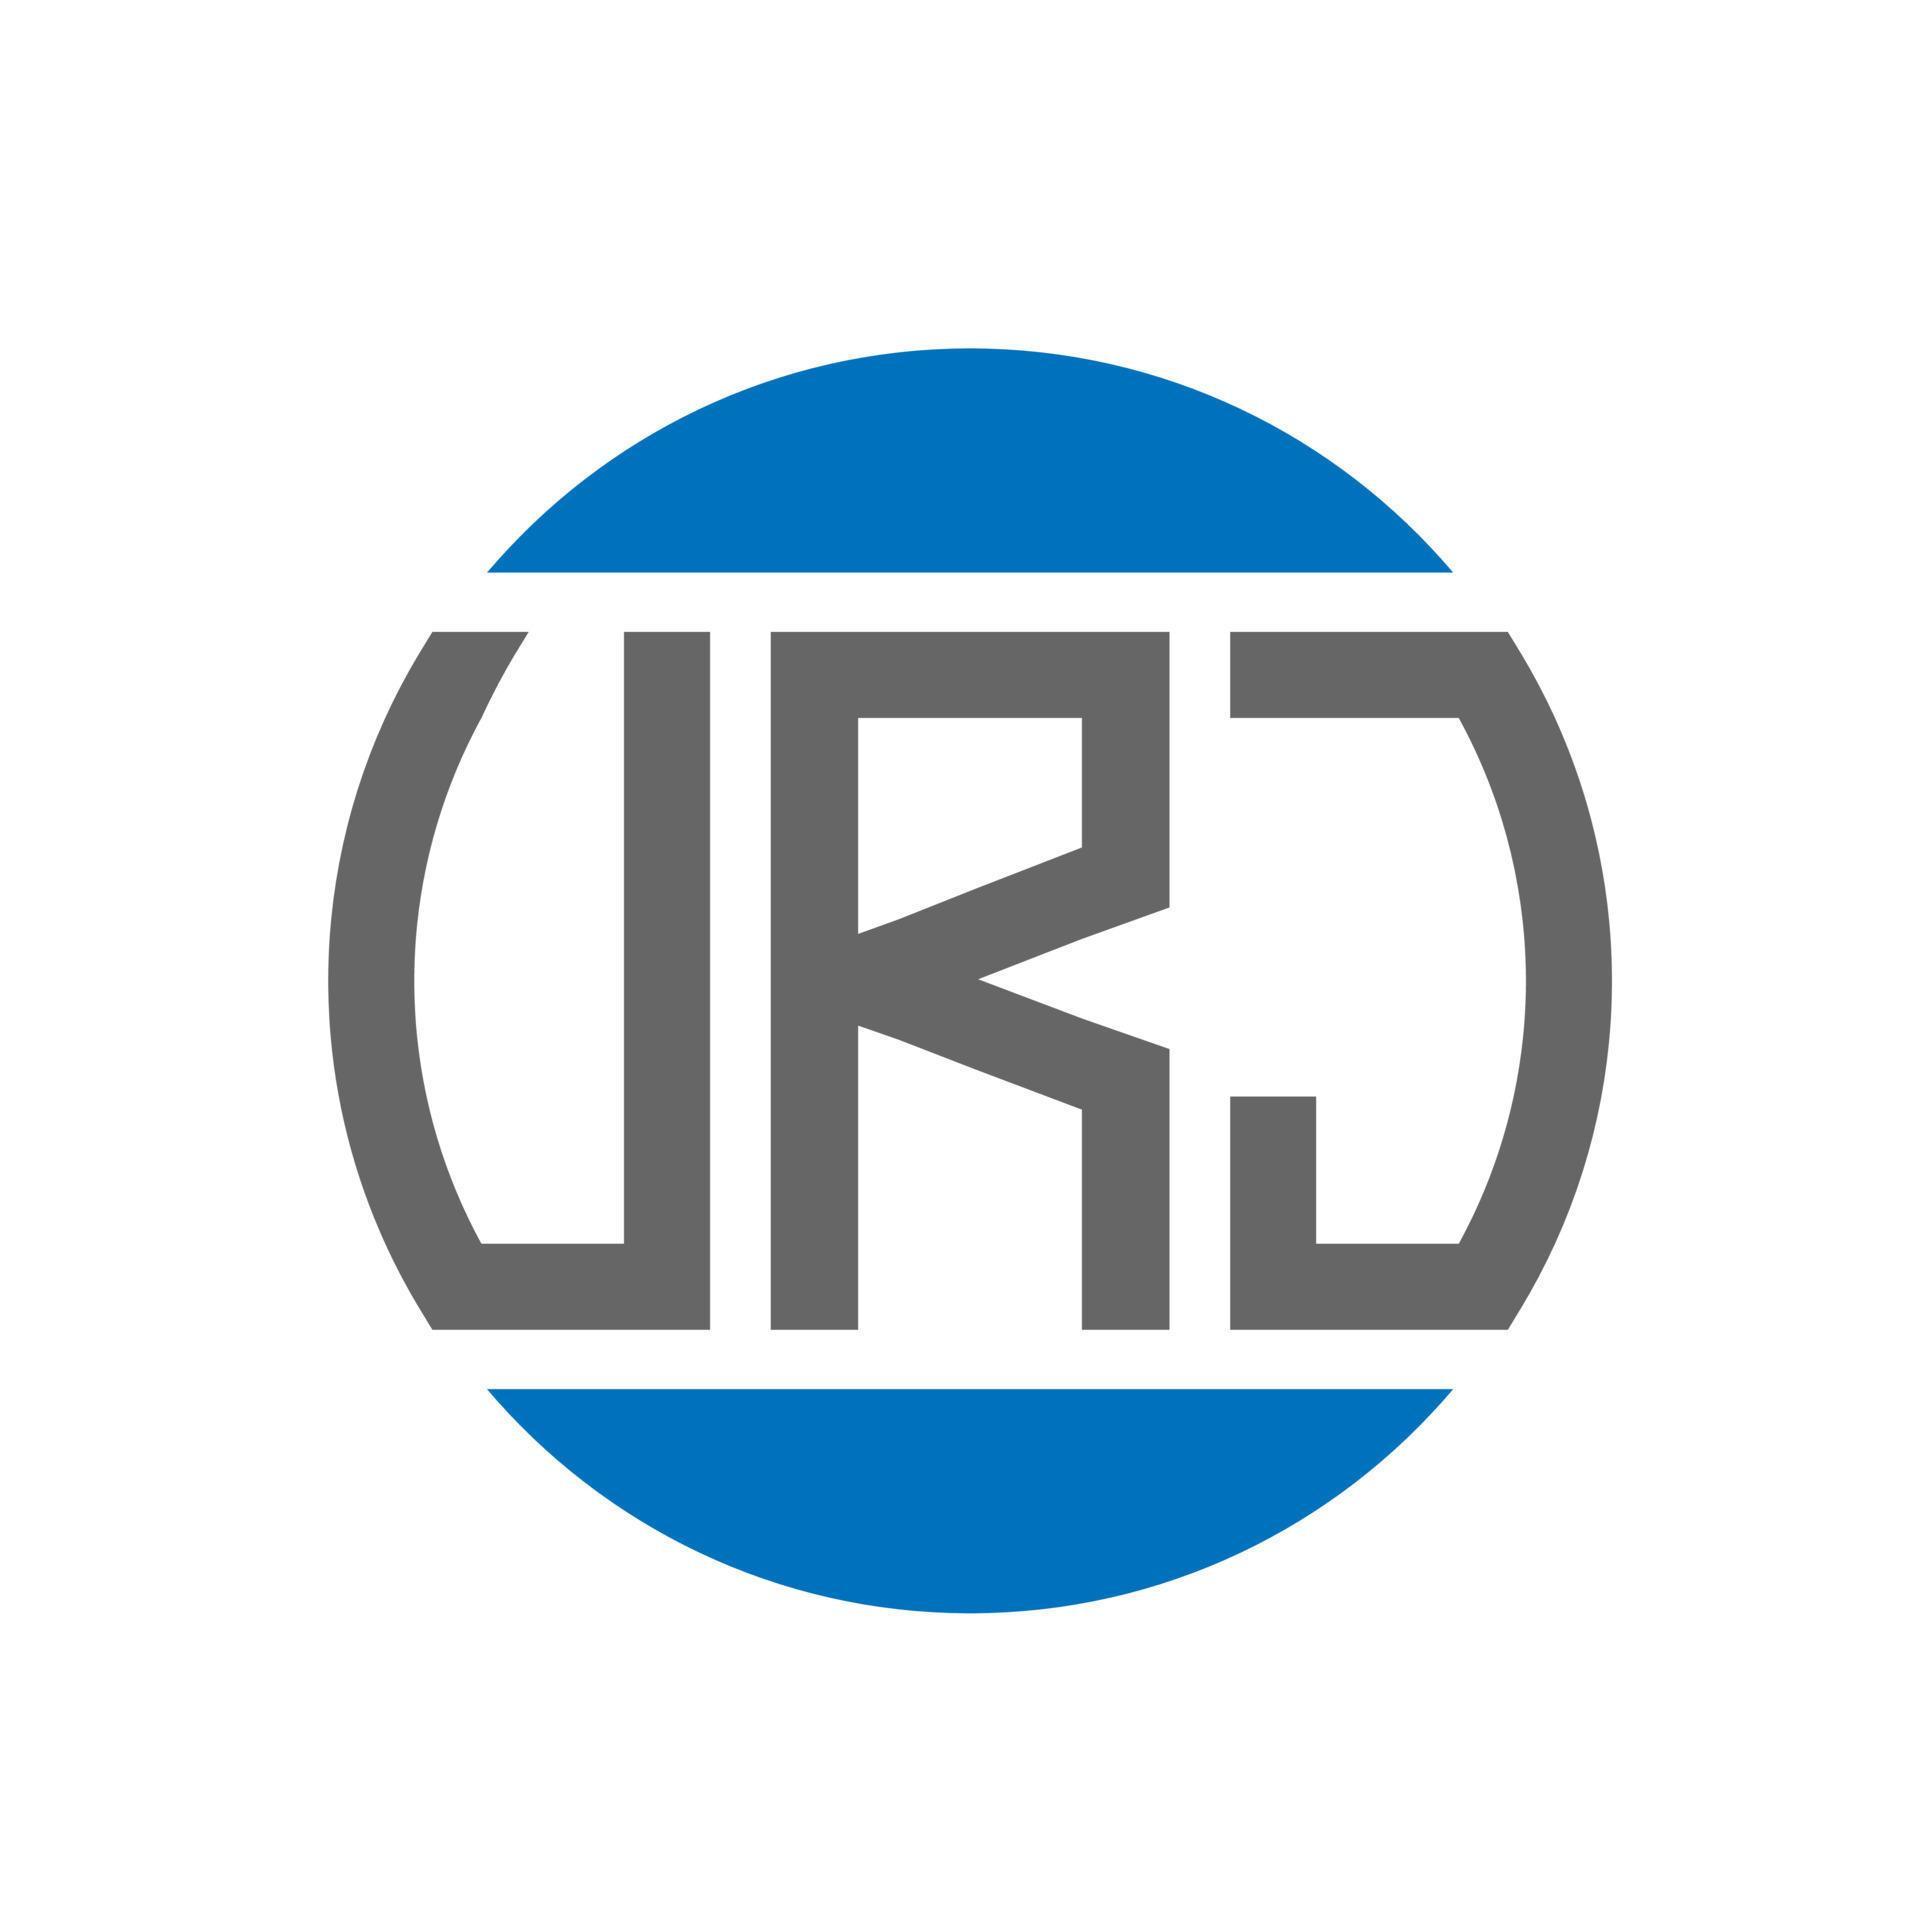 URJ letter logo design on white background. URJ creative initials .